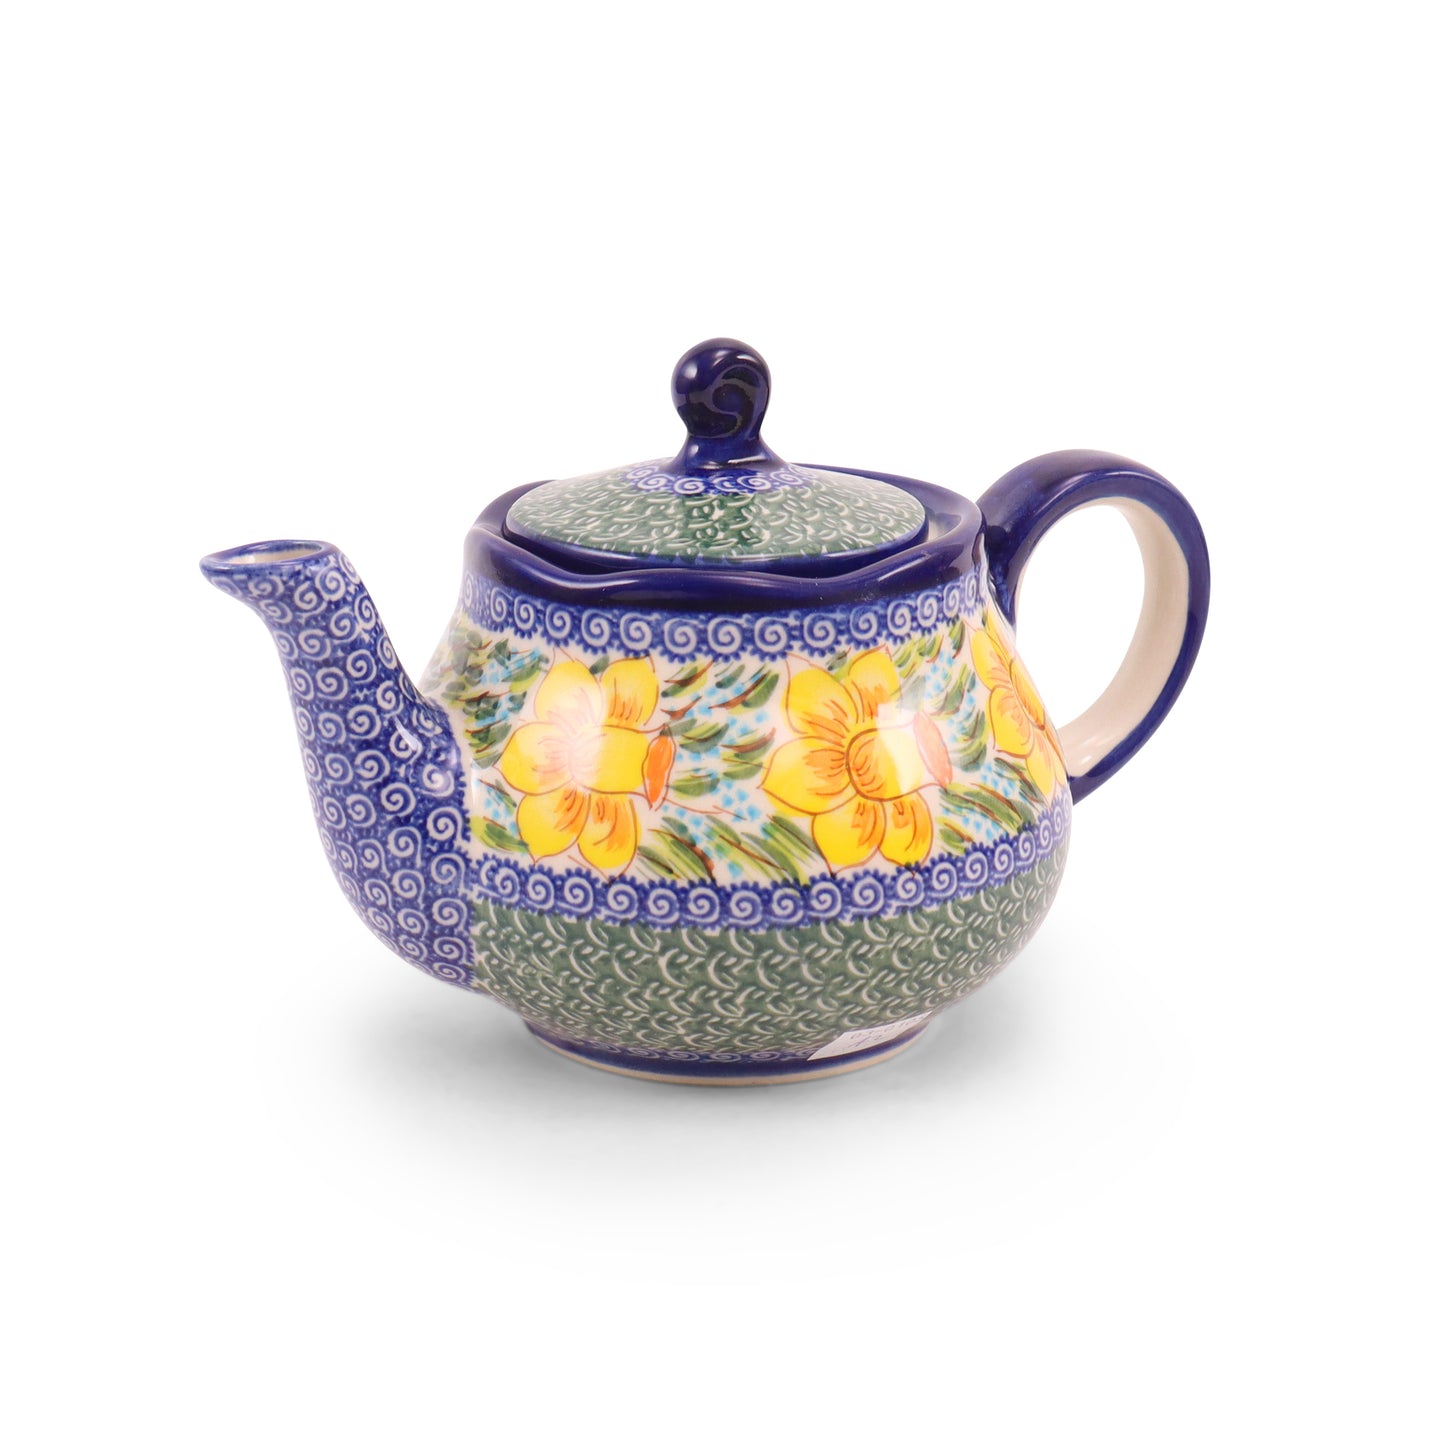 24oz Fruti Teapot. Pattern: Daffodil